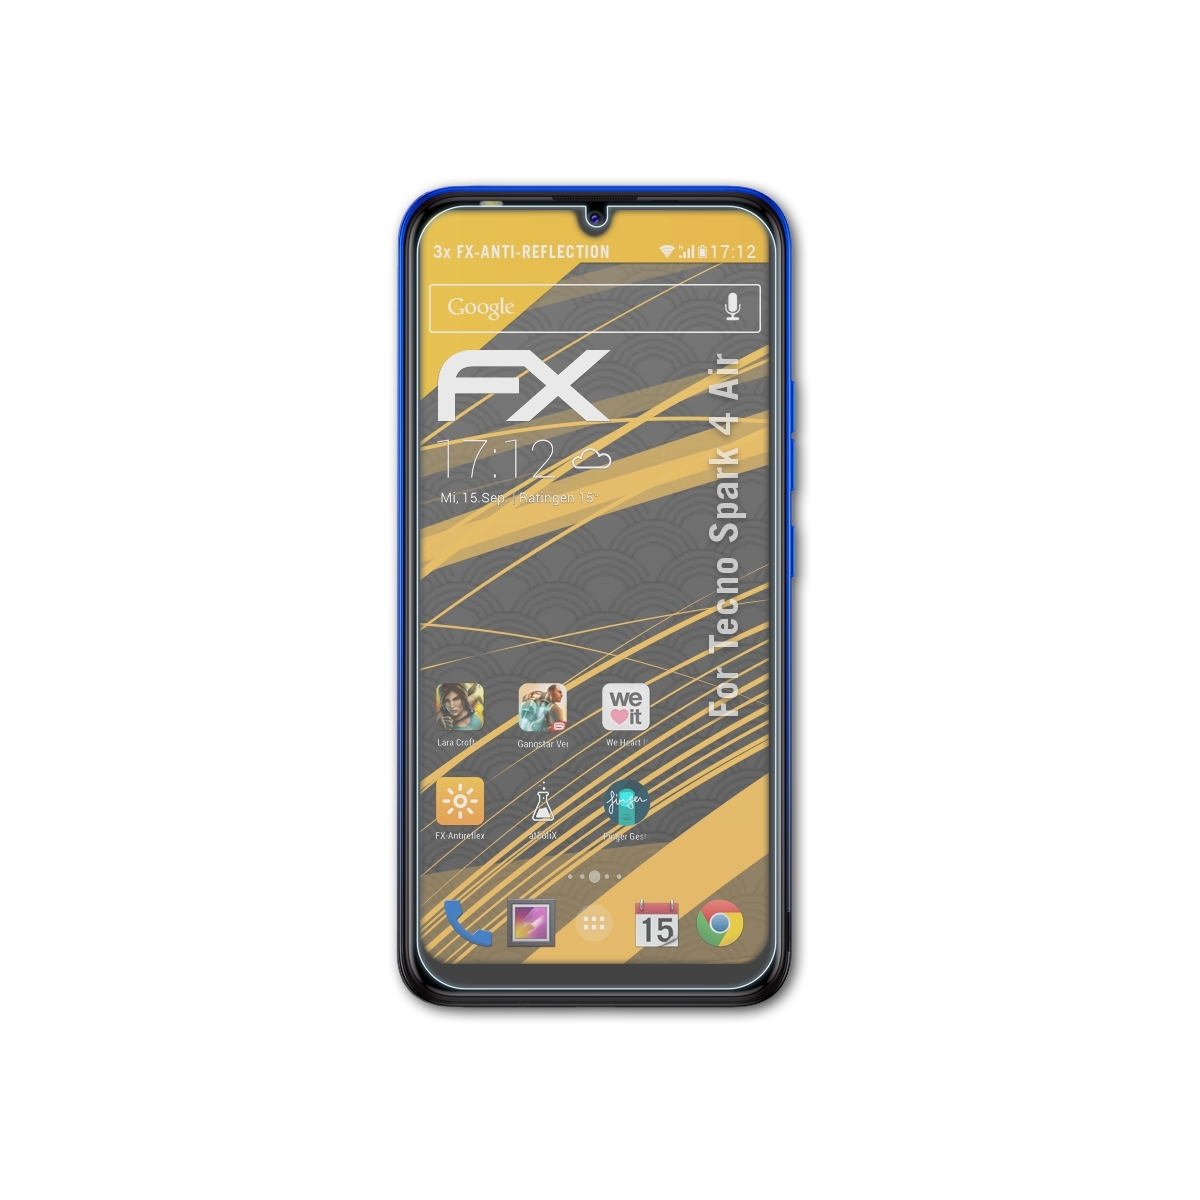 3x 4 Displayschutz(für FX-Antireflex Spark Air) ATFOLIX Tecno